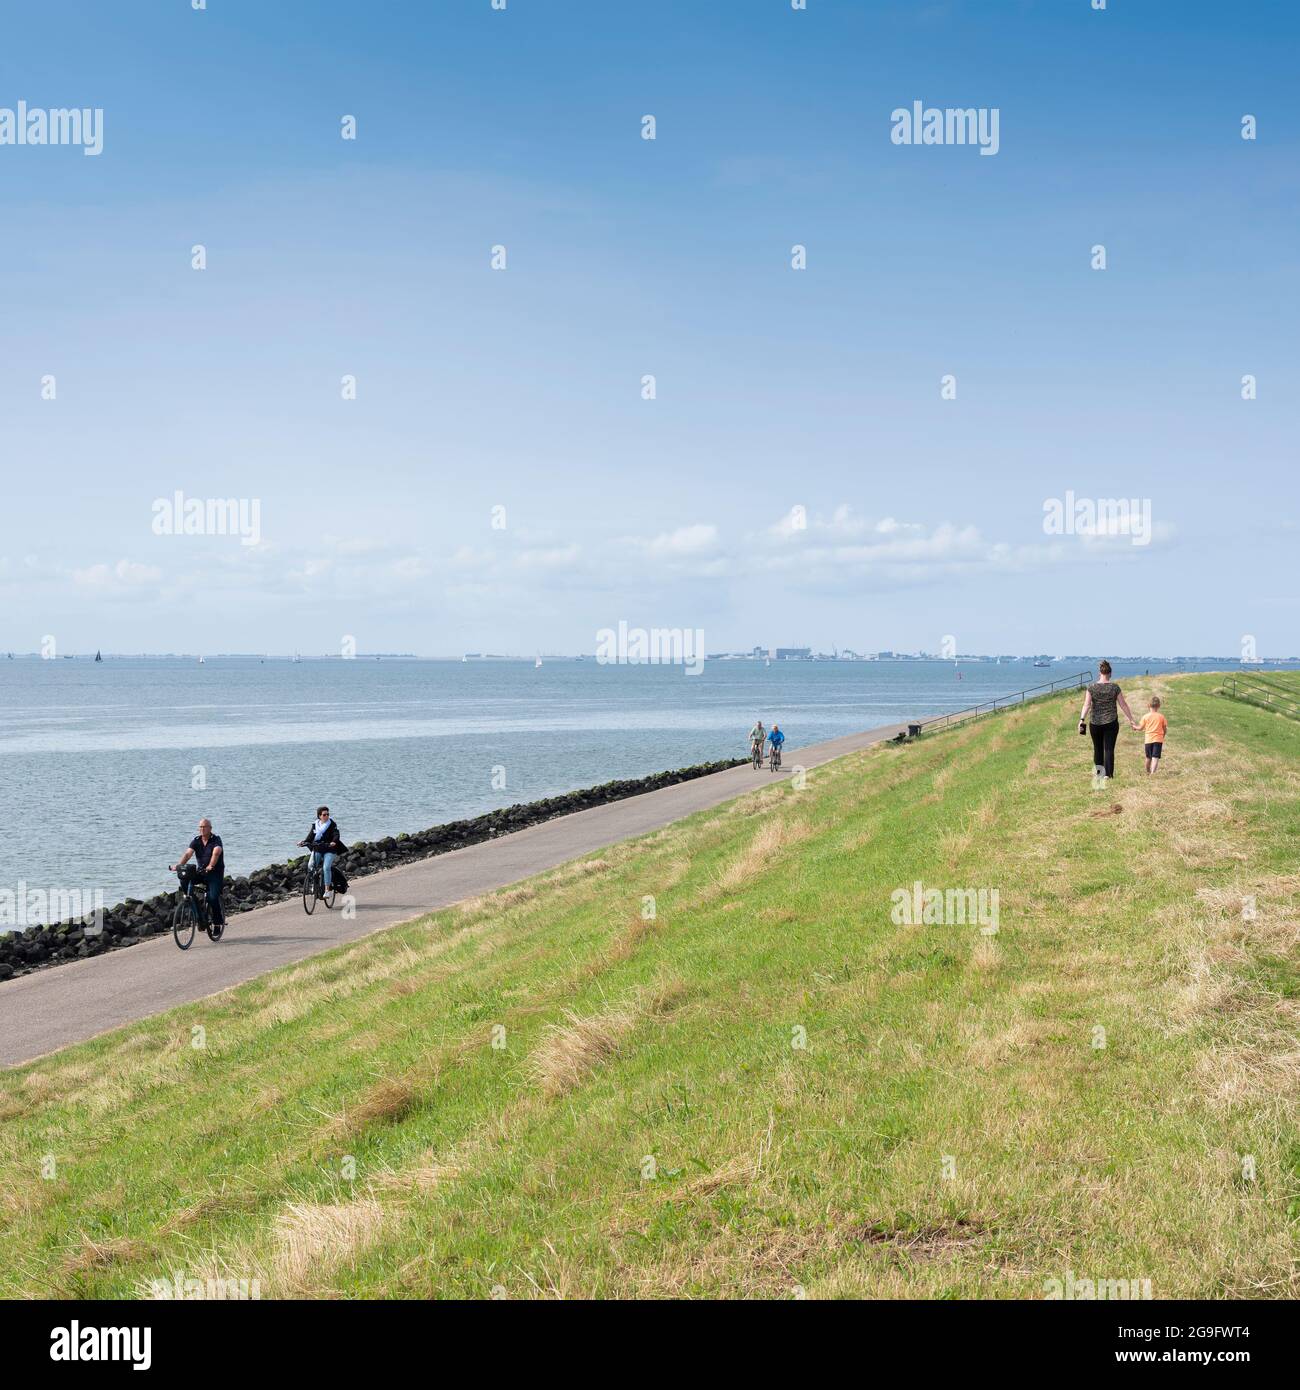 en été, les gens marchent à vélo sur la digue près d'oudeschild, sur l'île hollandaise de texel, sous le ciel bleu Banque D'Images